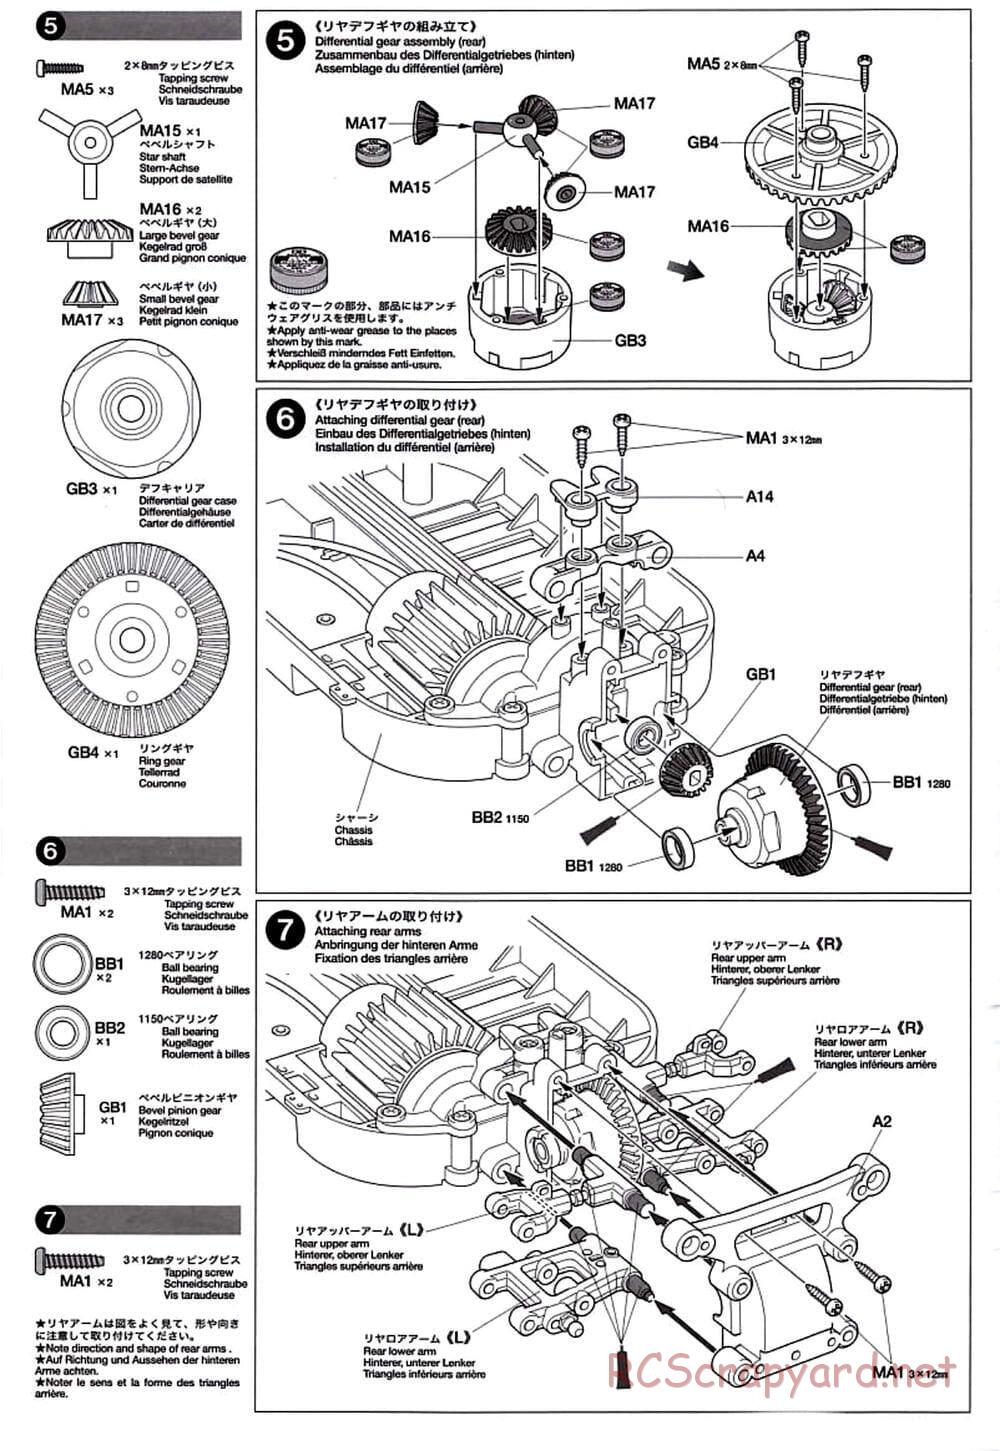 Tamiya - TT-01D Chassis - Manual - Page 6